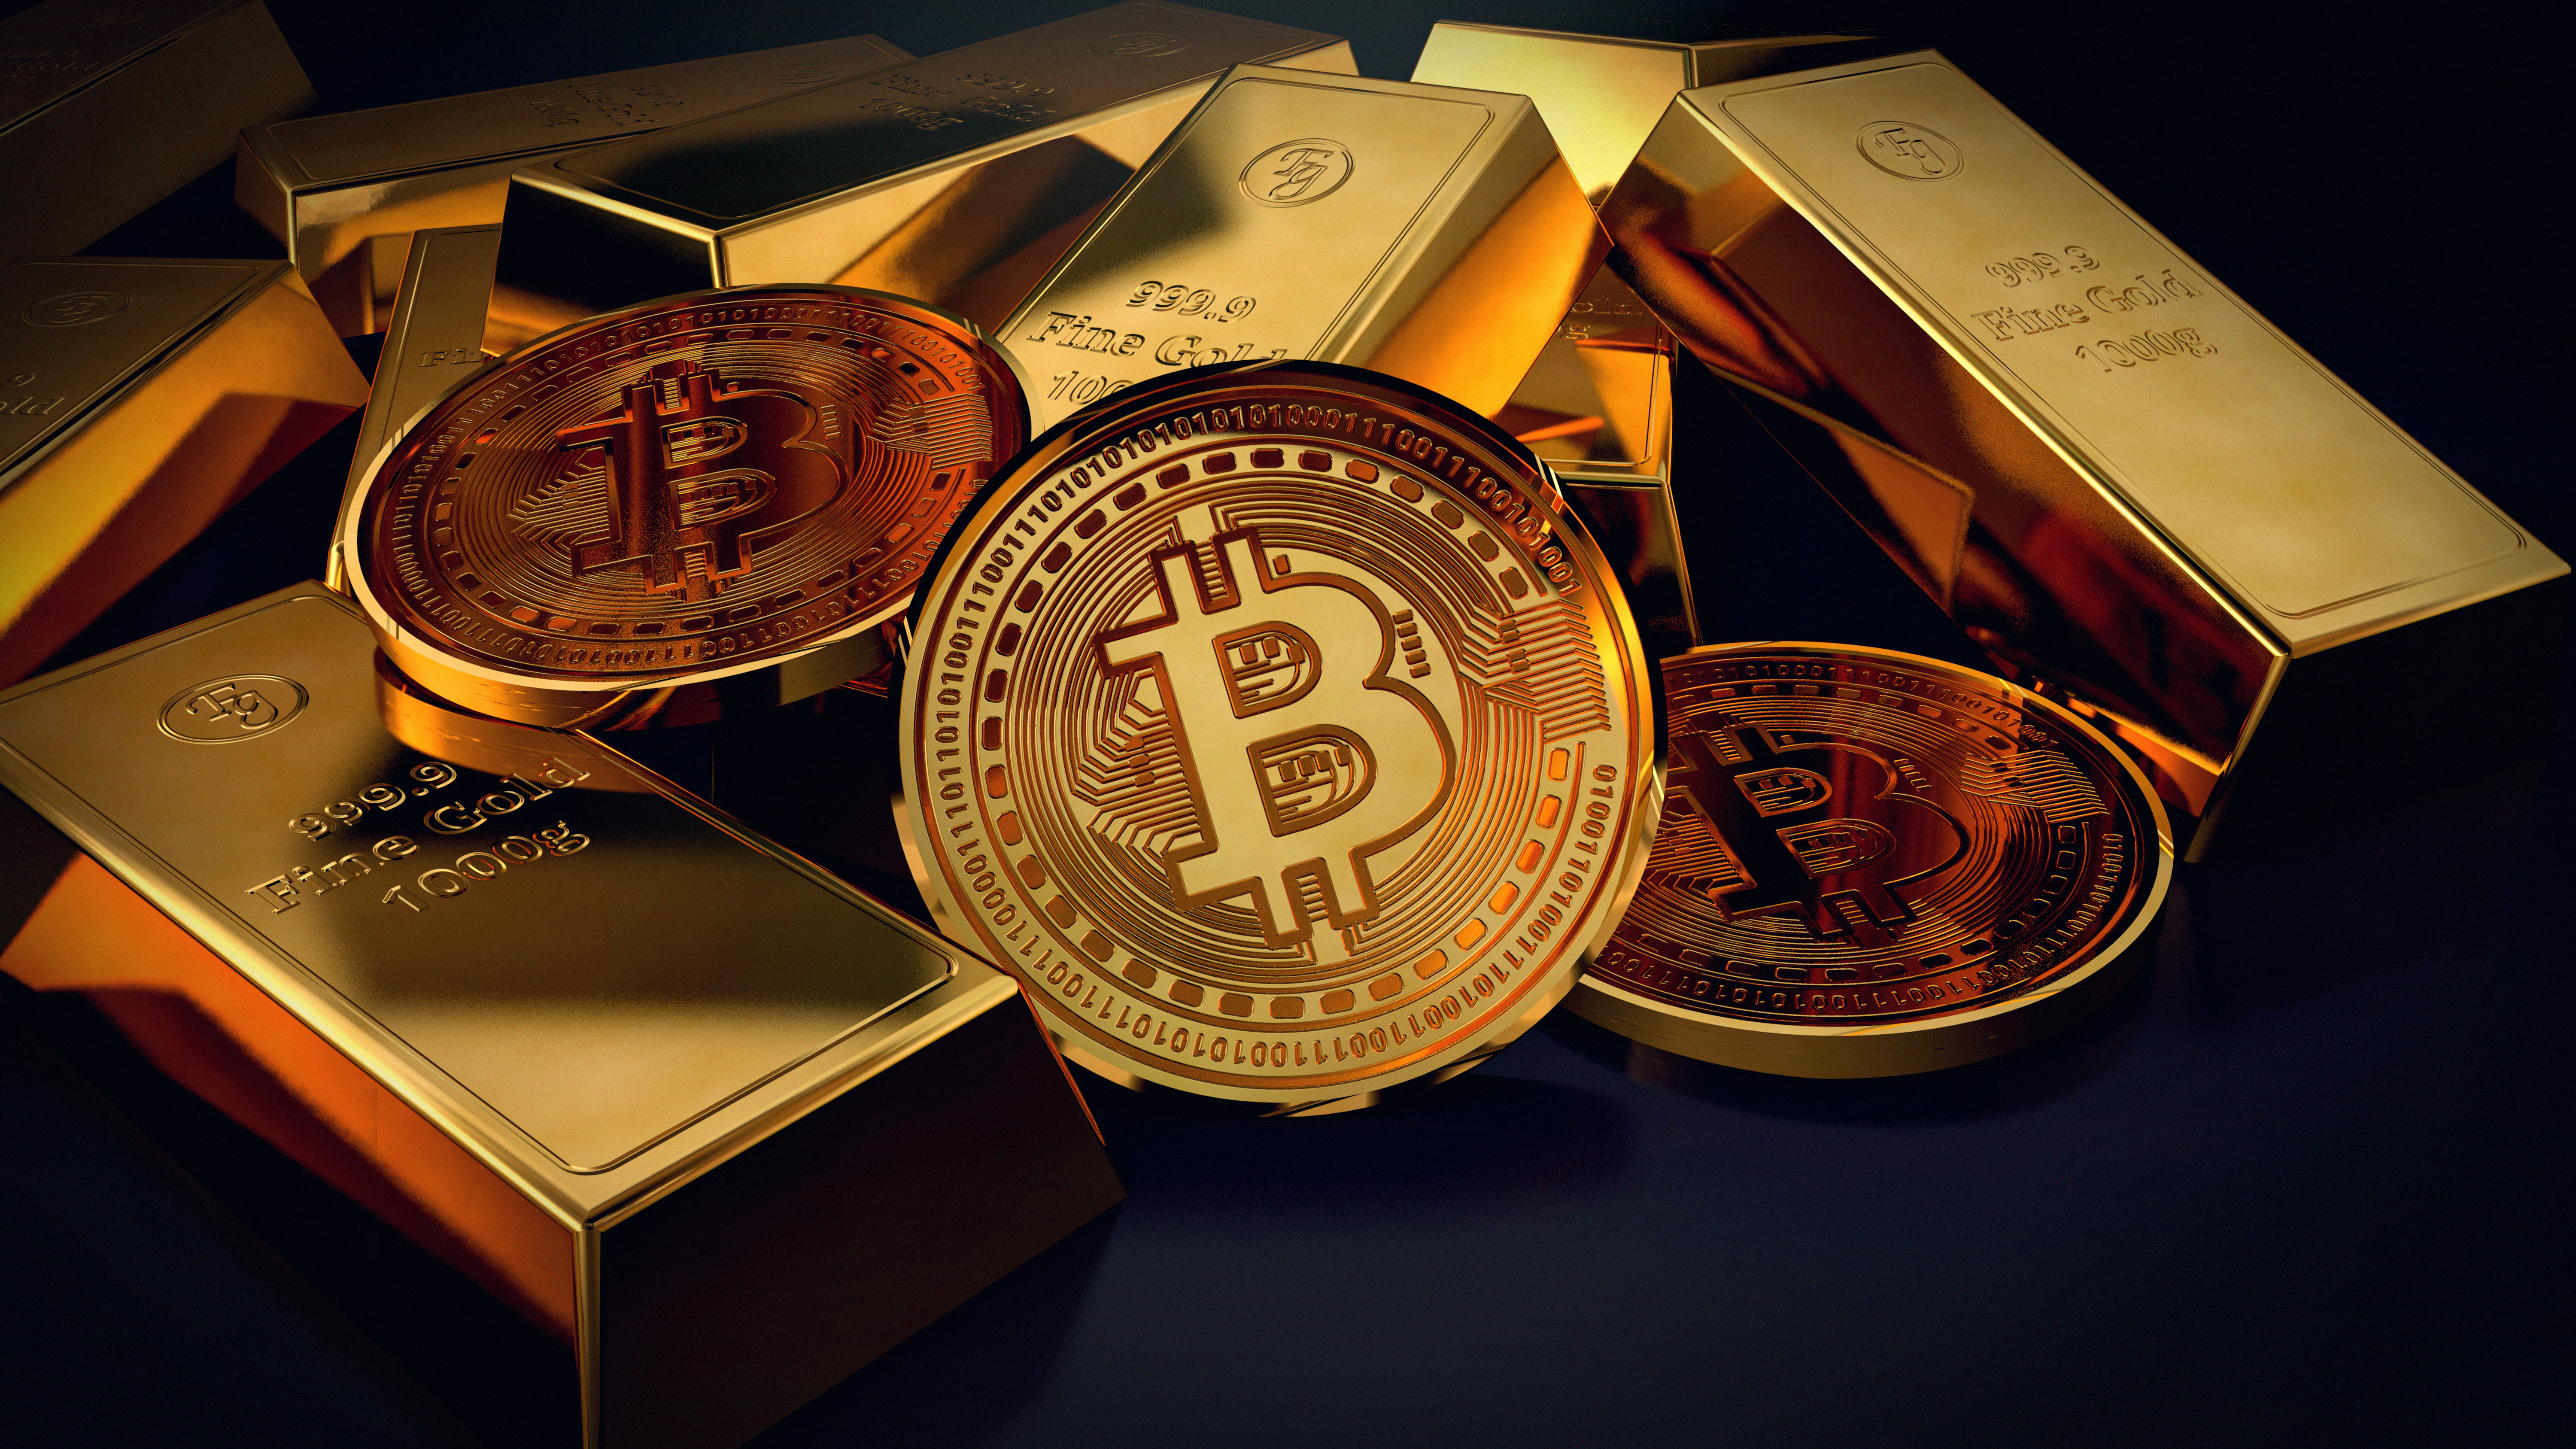 Một số đồng xu đại diện cho mã thông báo Bitcoin được xếp thành một đống, trộn lẫn với các thanh vàng.